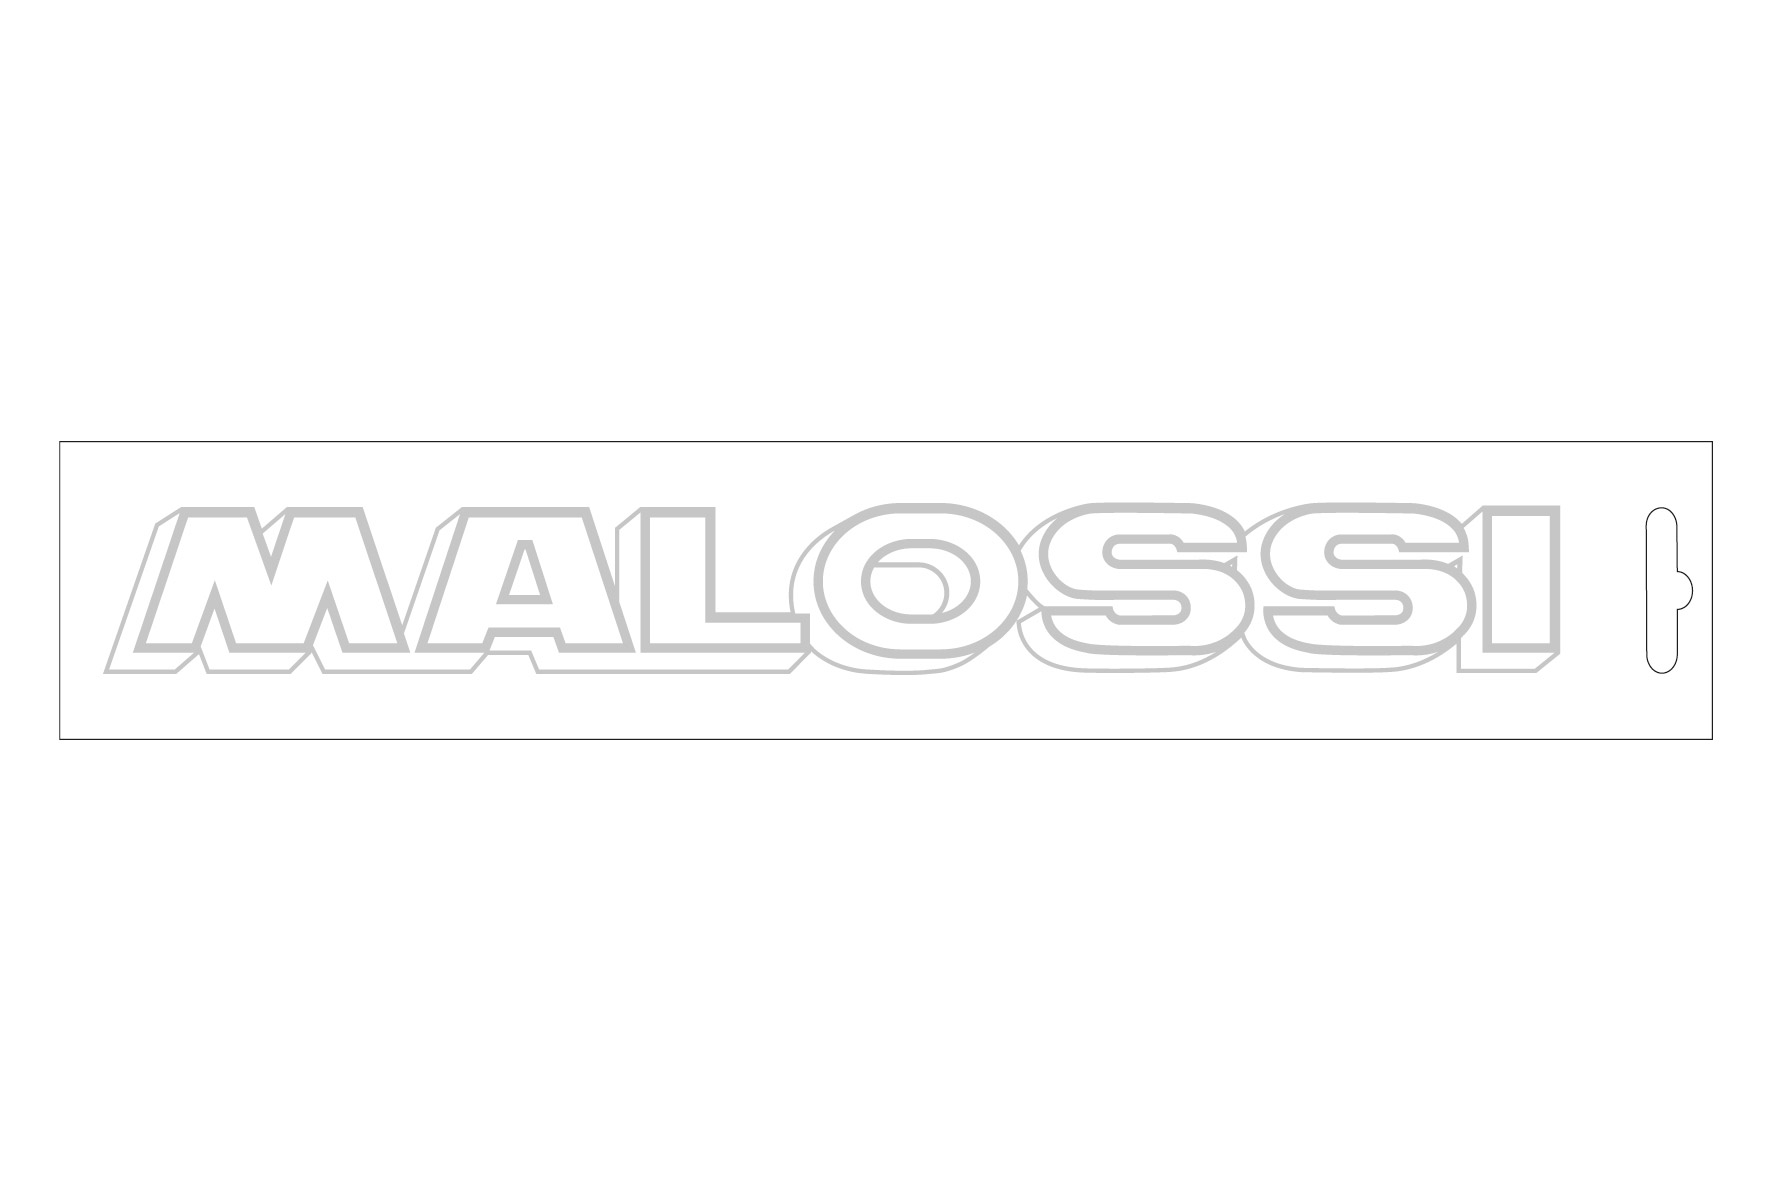 Adesivo malossi cromato - lunghezza 22 cm - MalossiStore